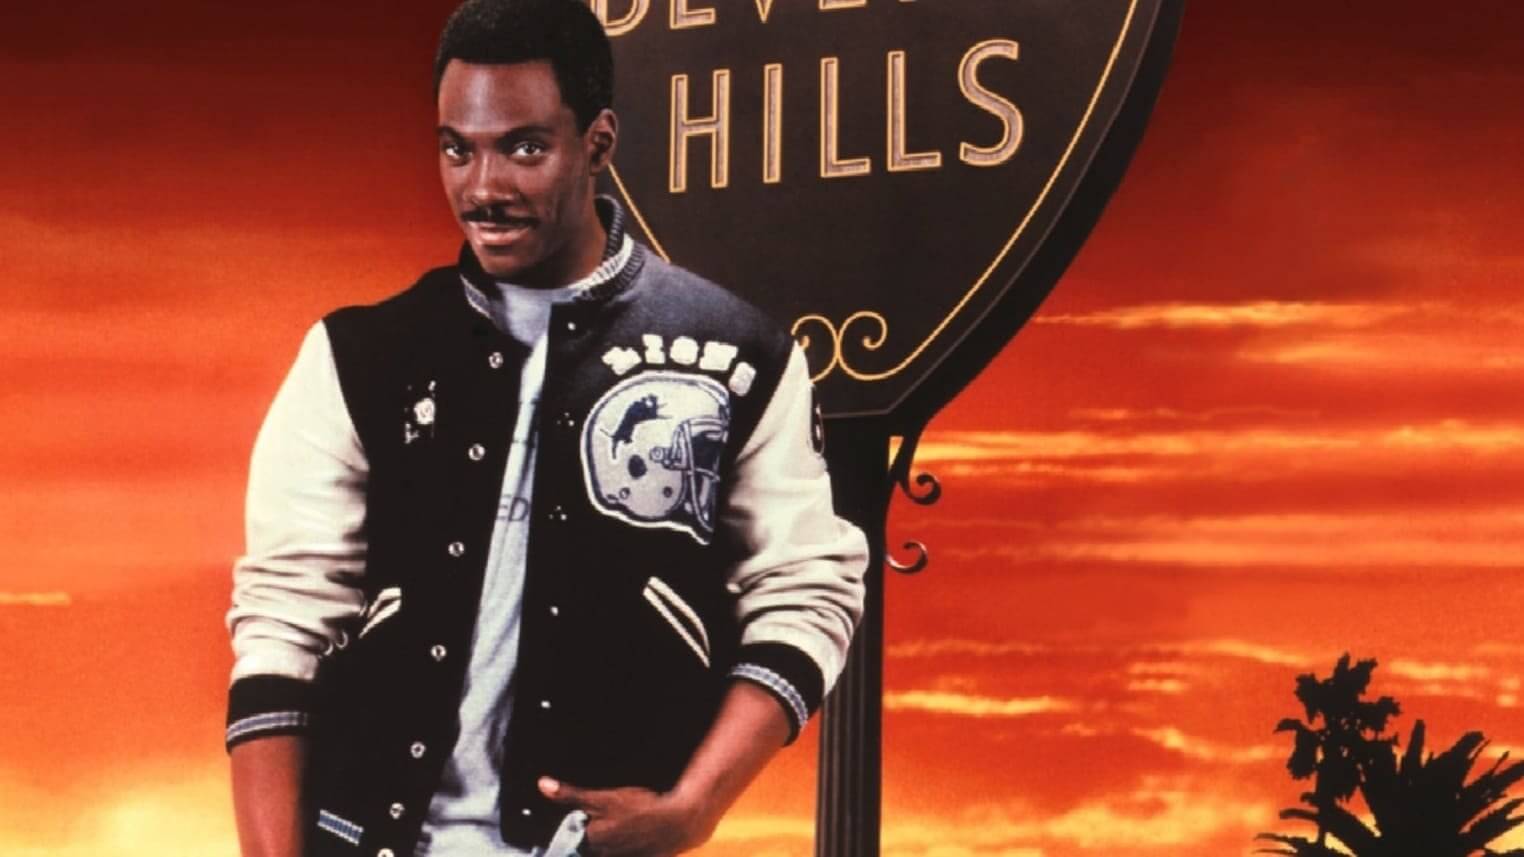 Beverly Hills Cop II 4K 1987 big poster